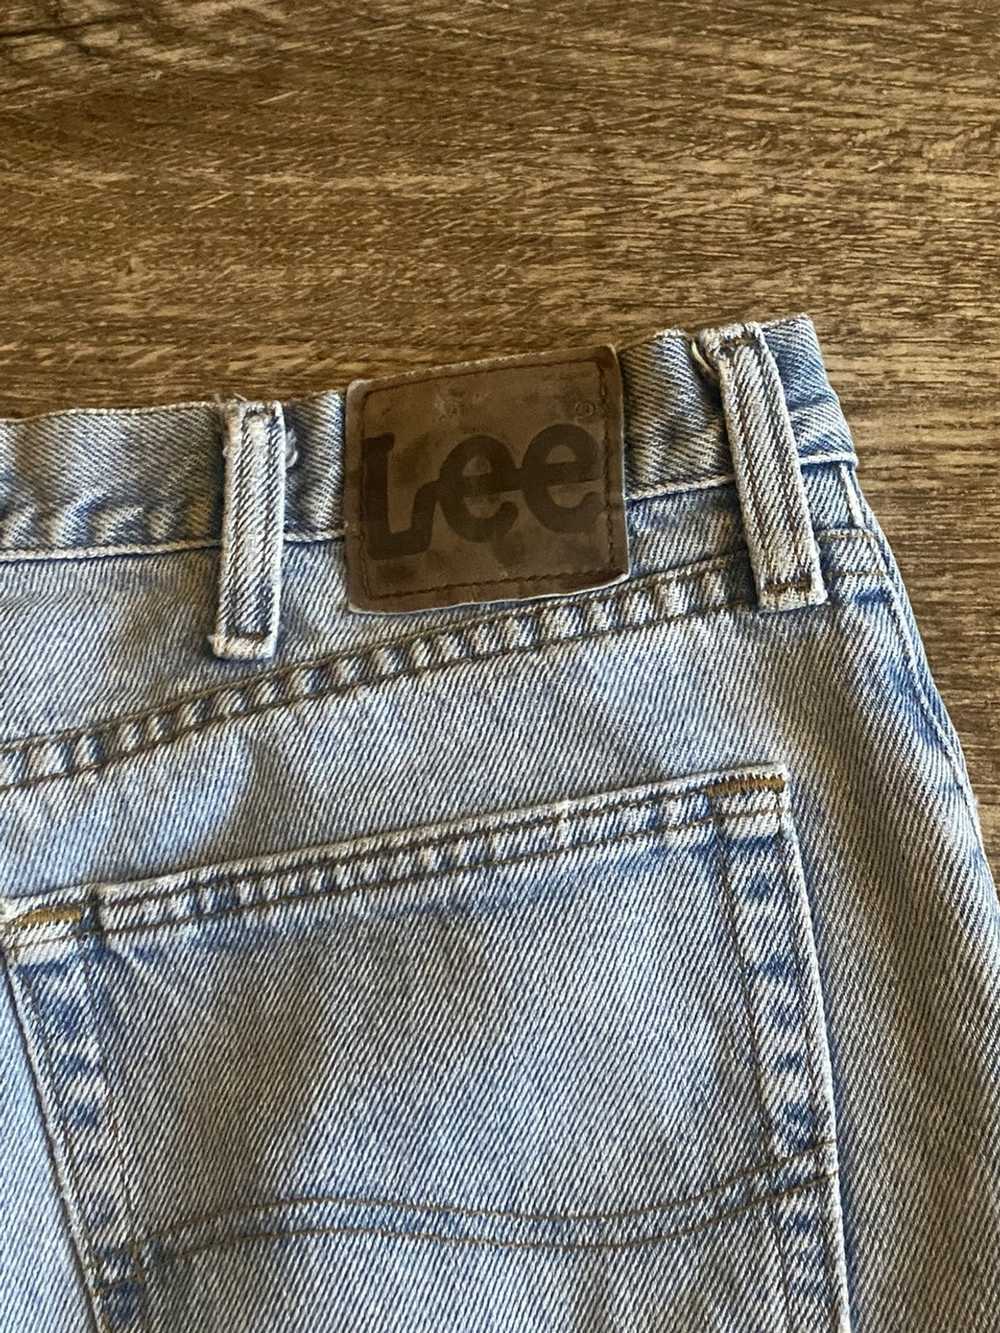 Lee × Vintage 90s Vintage Lee Jeans - image 3